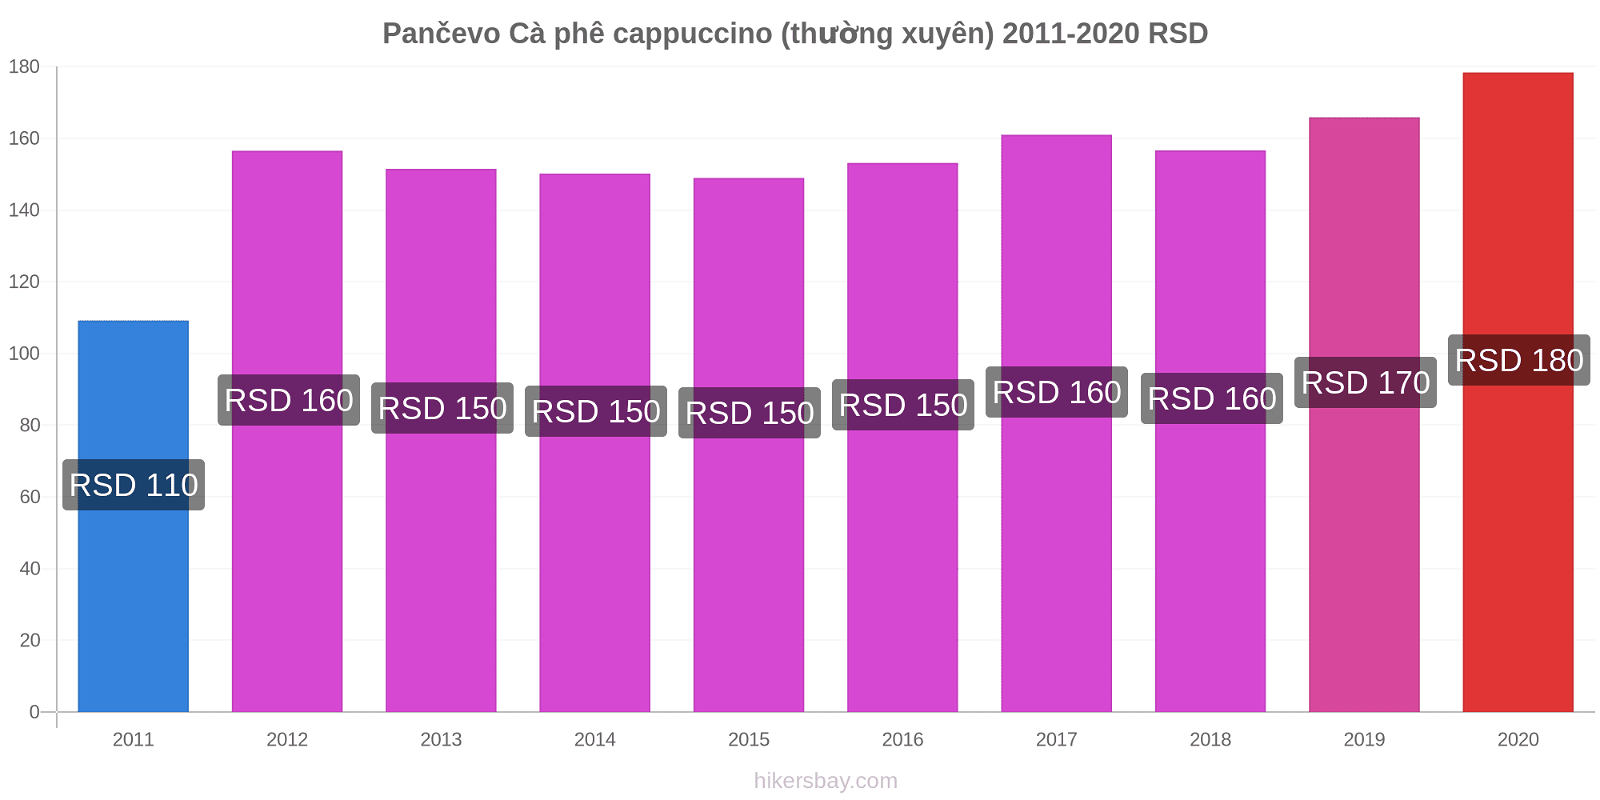 Pančevo thay đổi giá Cà phê cappuccino (thường xuyên) hikersbay.com